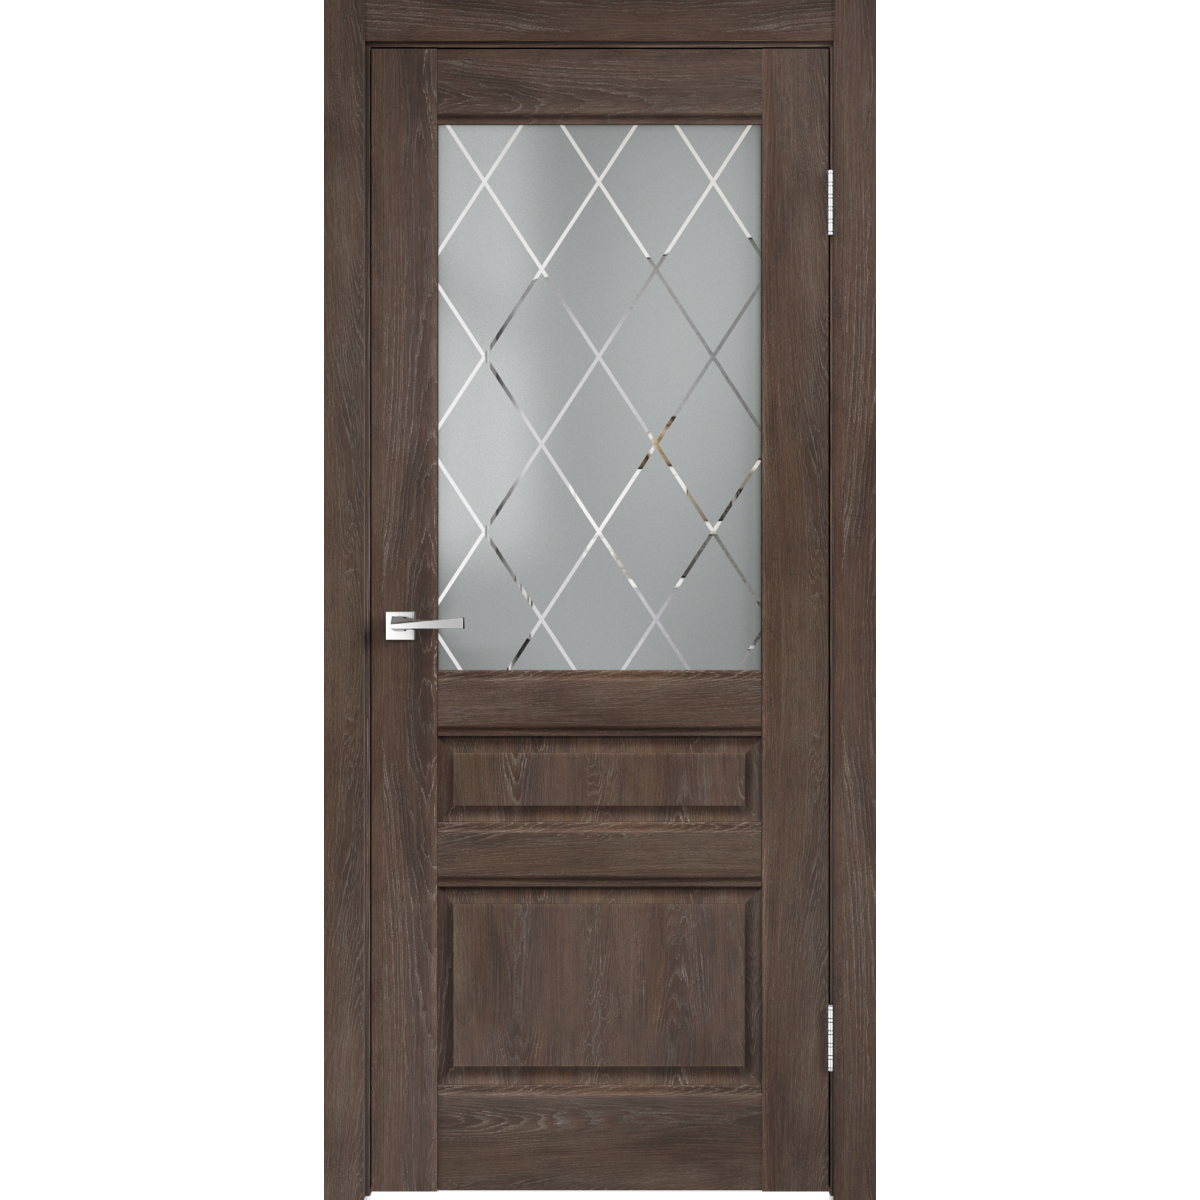 Дверь межкомнатная остеклённая «Летиция» 80x200 см, ПВХ, цвет дуб корица, с фурнитурой